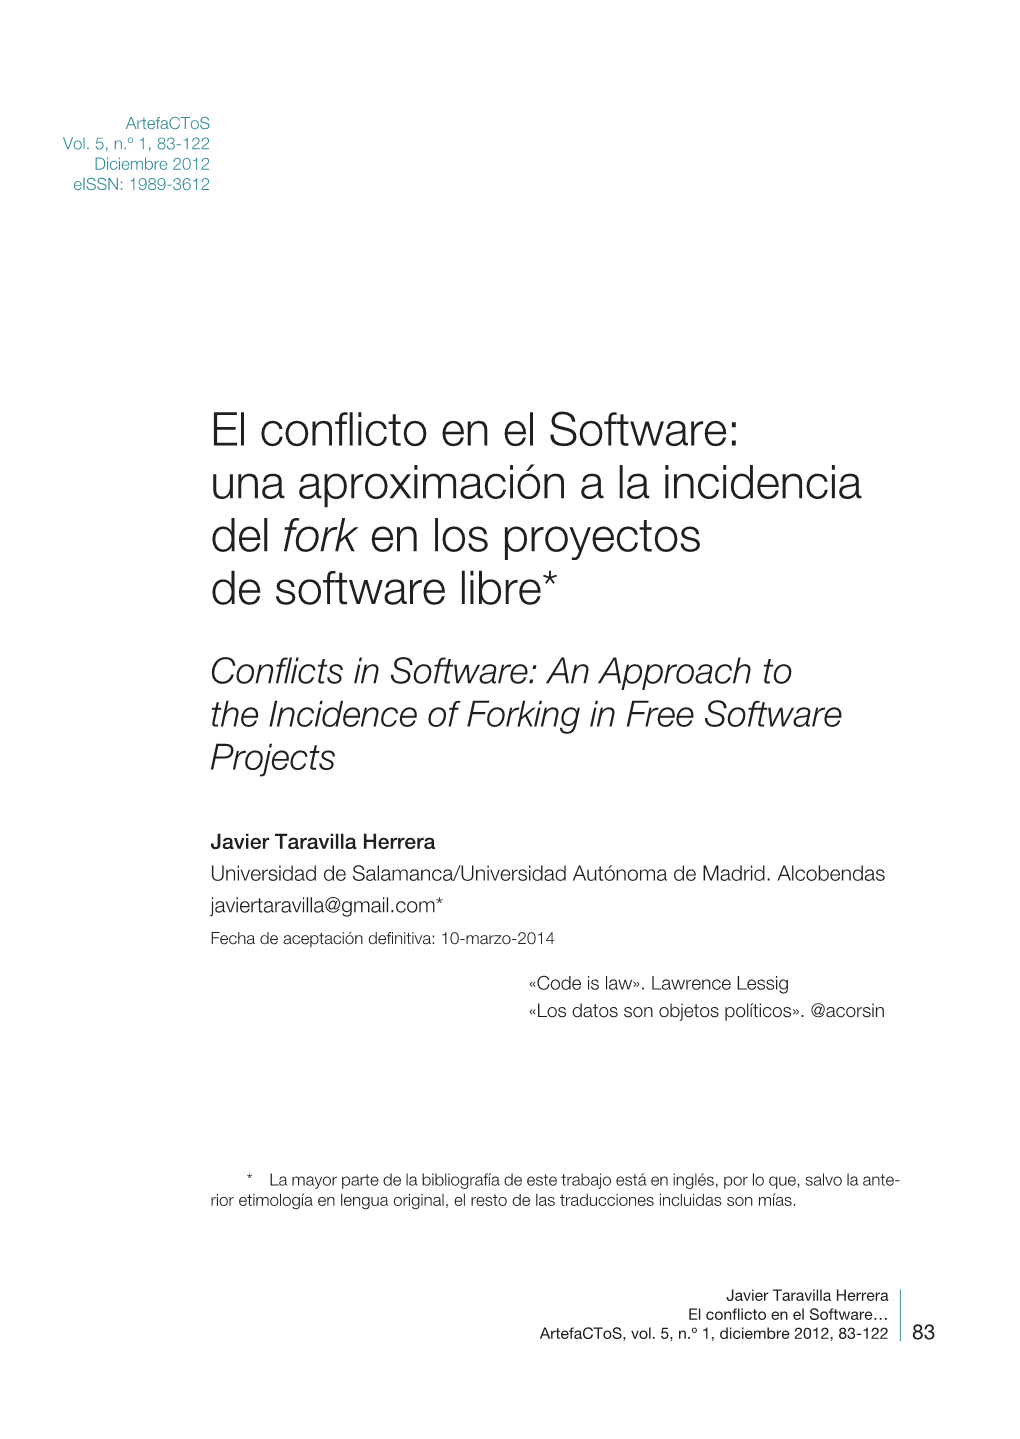 Fork» En Los Proyectos De Software Libre = Conflicts in So